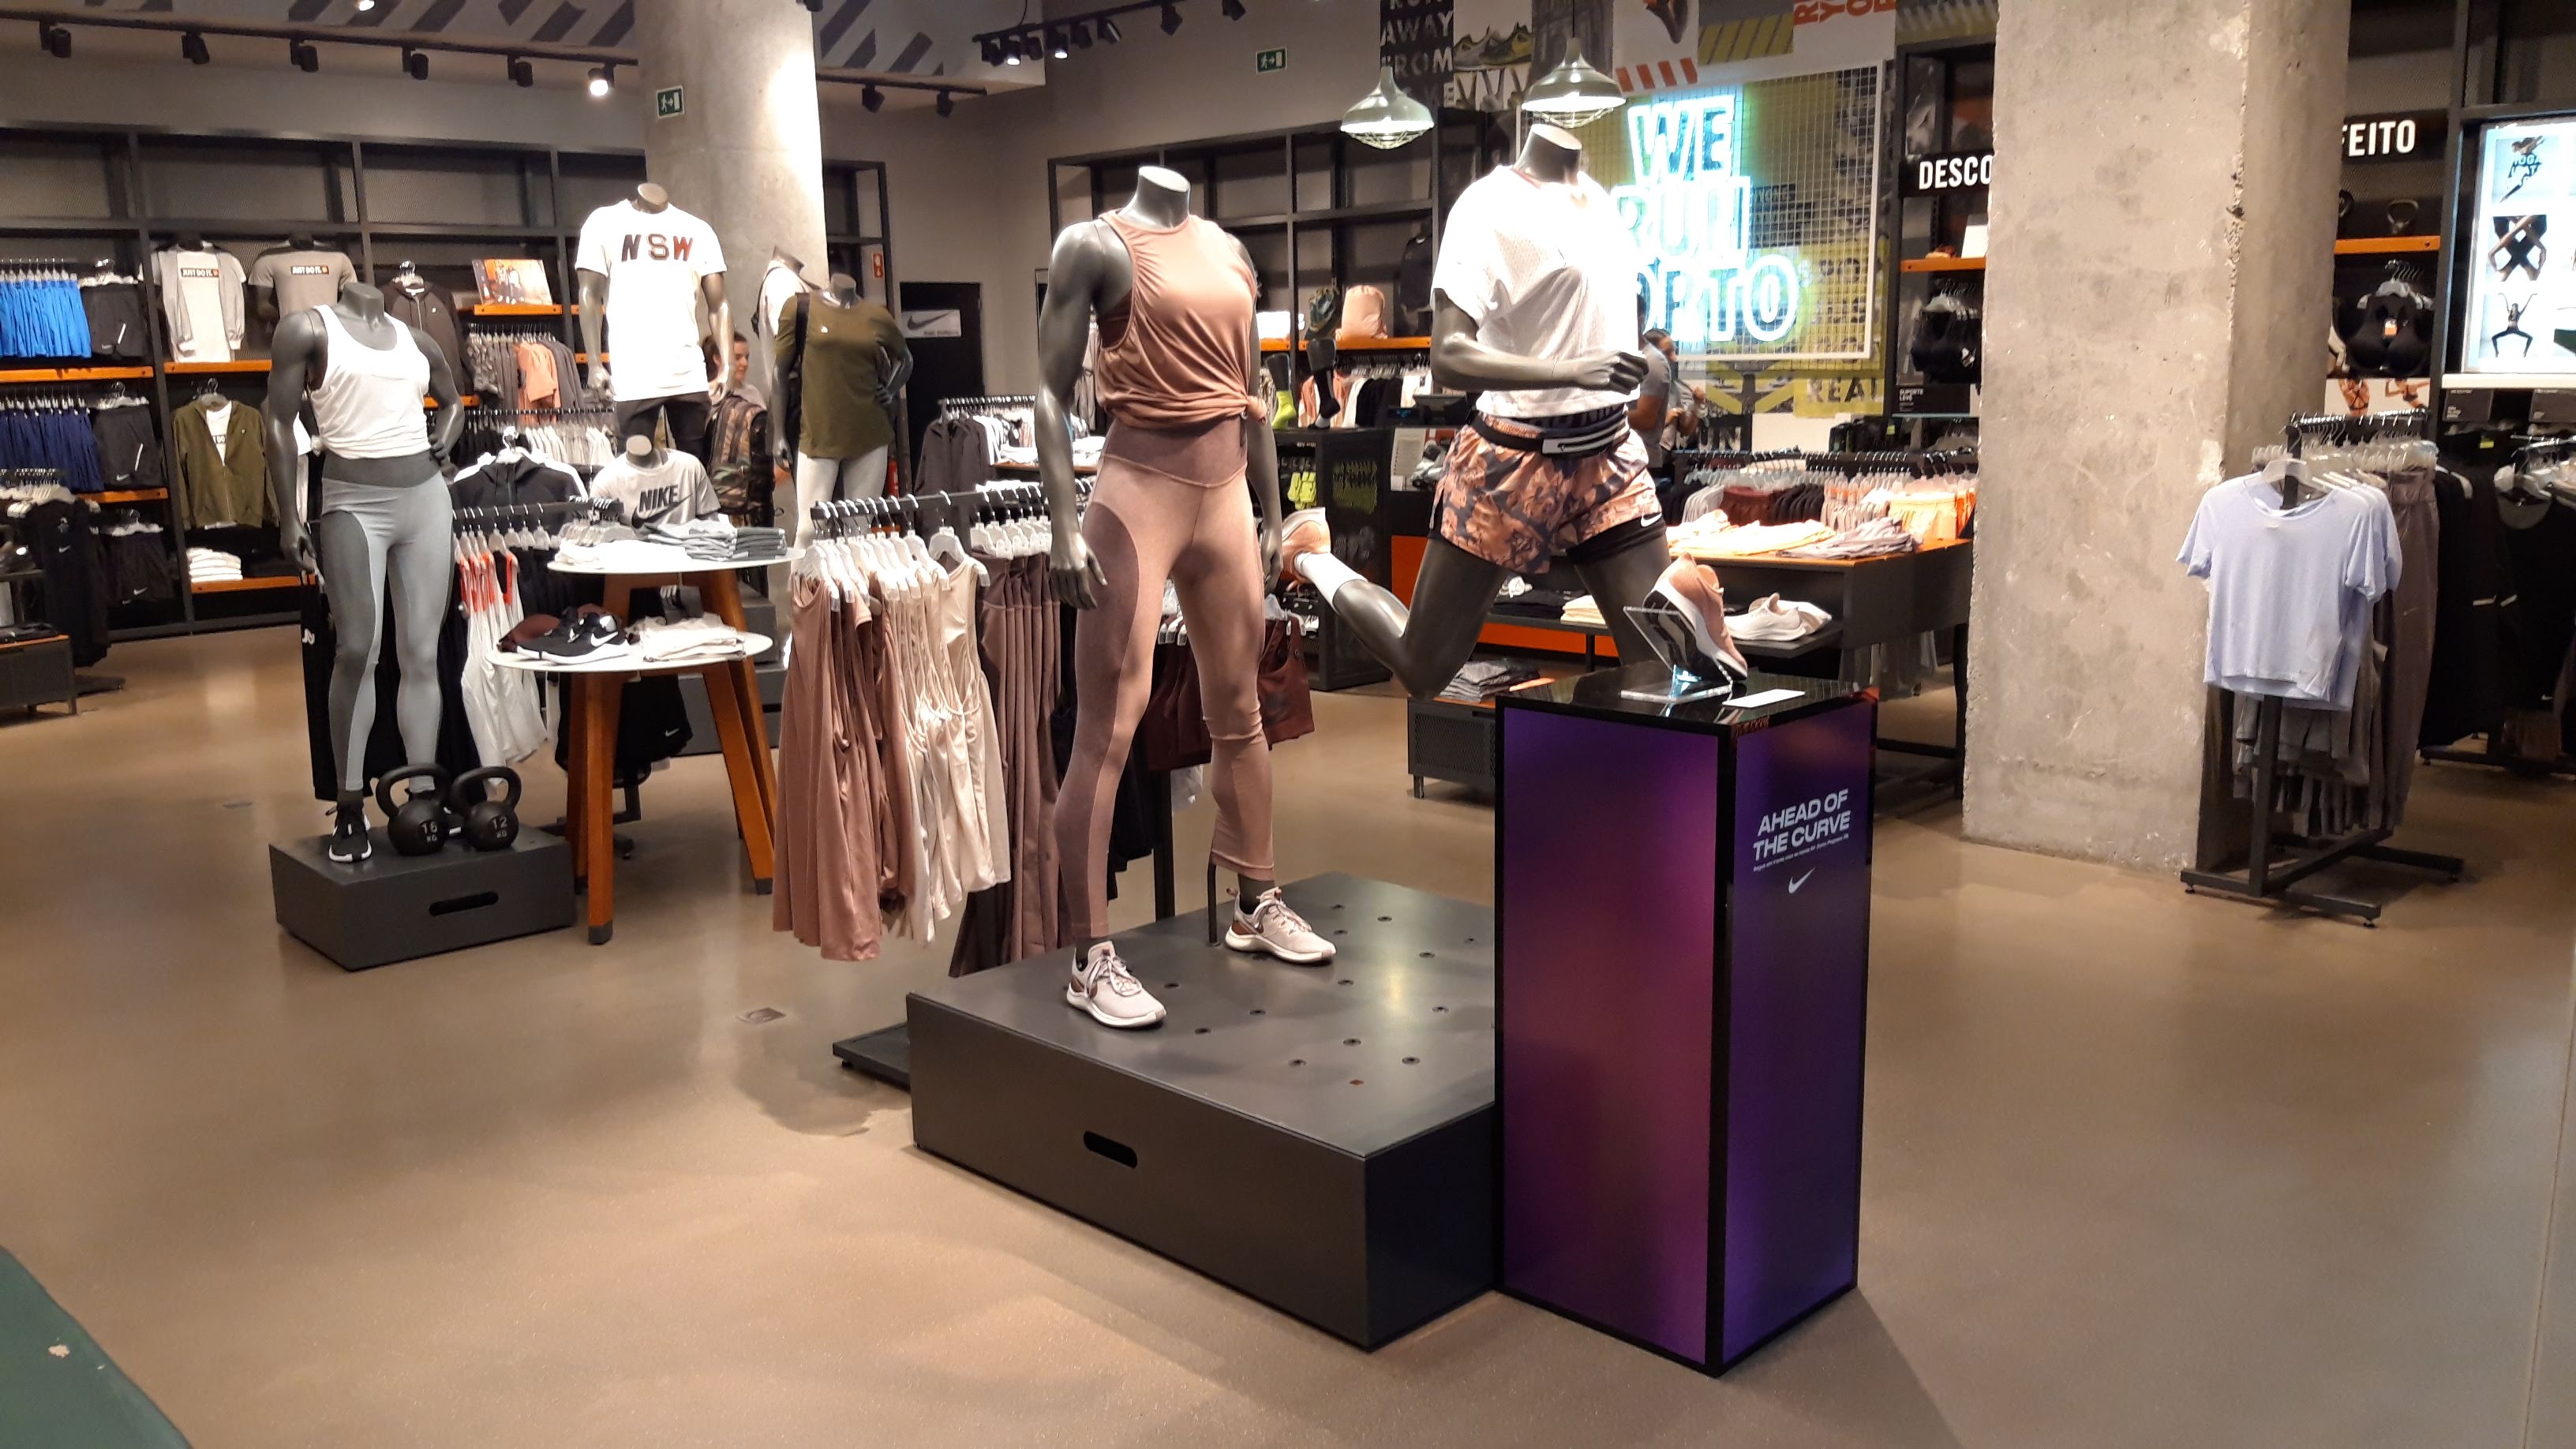 Nike Store - Deportes Y Ocio: Artículos Y Ropas (Al Por Menor Y Accesorios) en Porto (dirección, TEL: 229545...) -